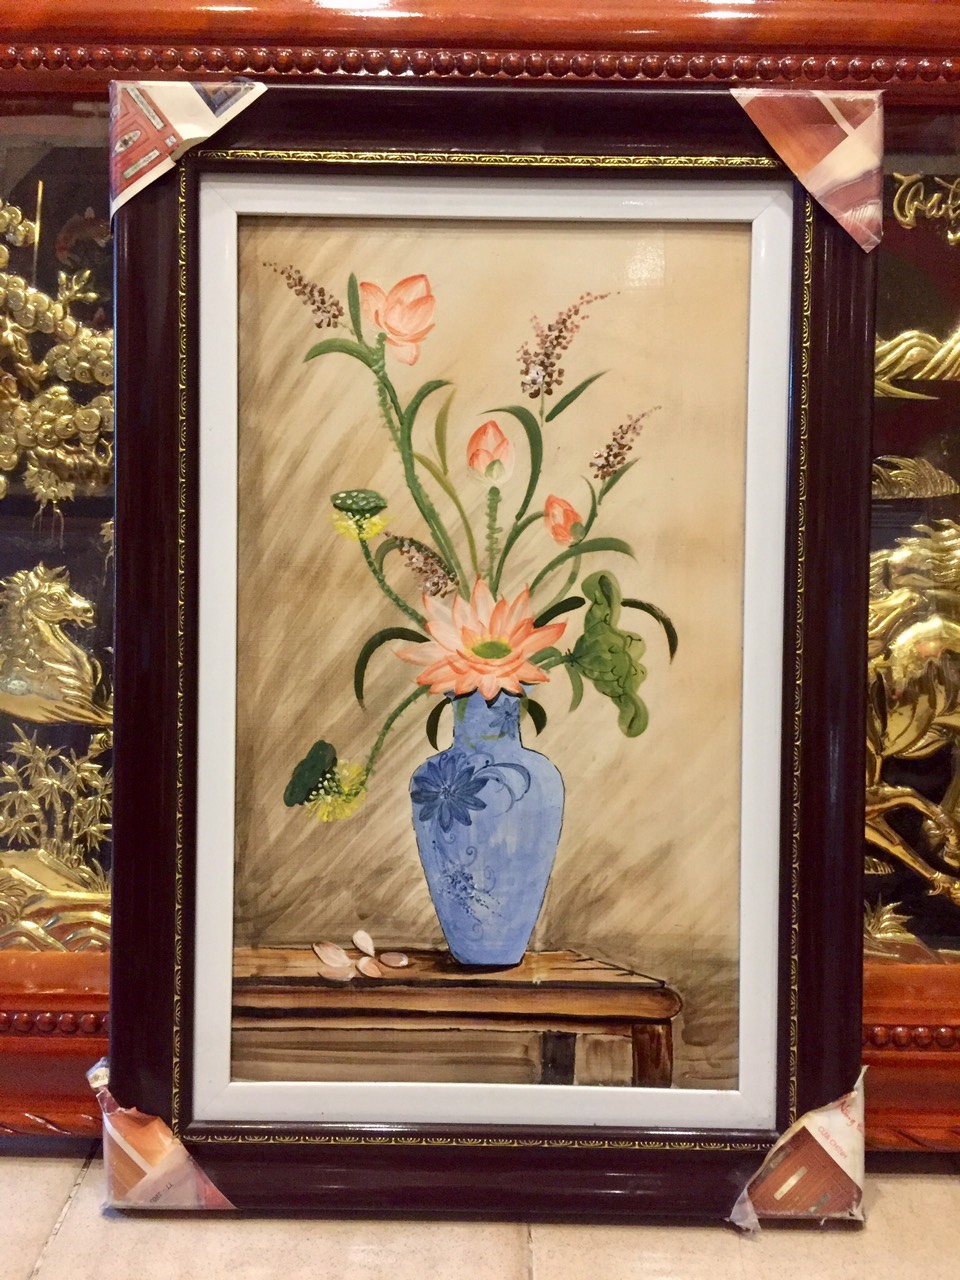 Tranh sứ bình Hoa Sen là một tác phẩm nghệ thuật tinh tế và đẹp mắt, cùng với kiểu dáng độc đáo của bình hoa sứ. Hoa sen trên bình được vẽ tinh tế, giúp bạn thư giãn và tận hưởng vẻ đẹp của hoa sen.